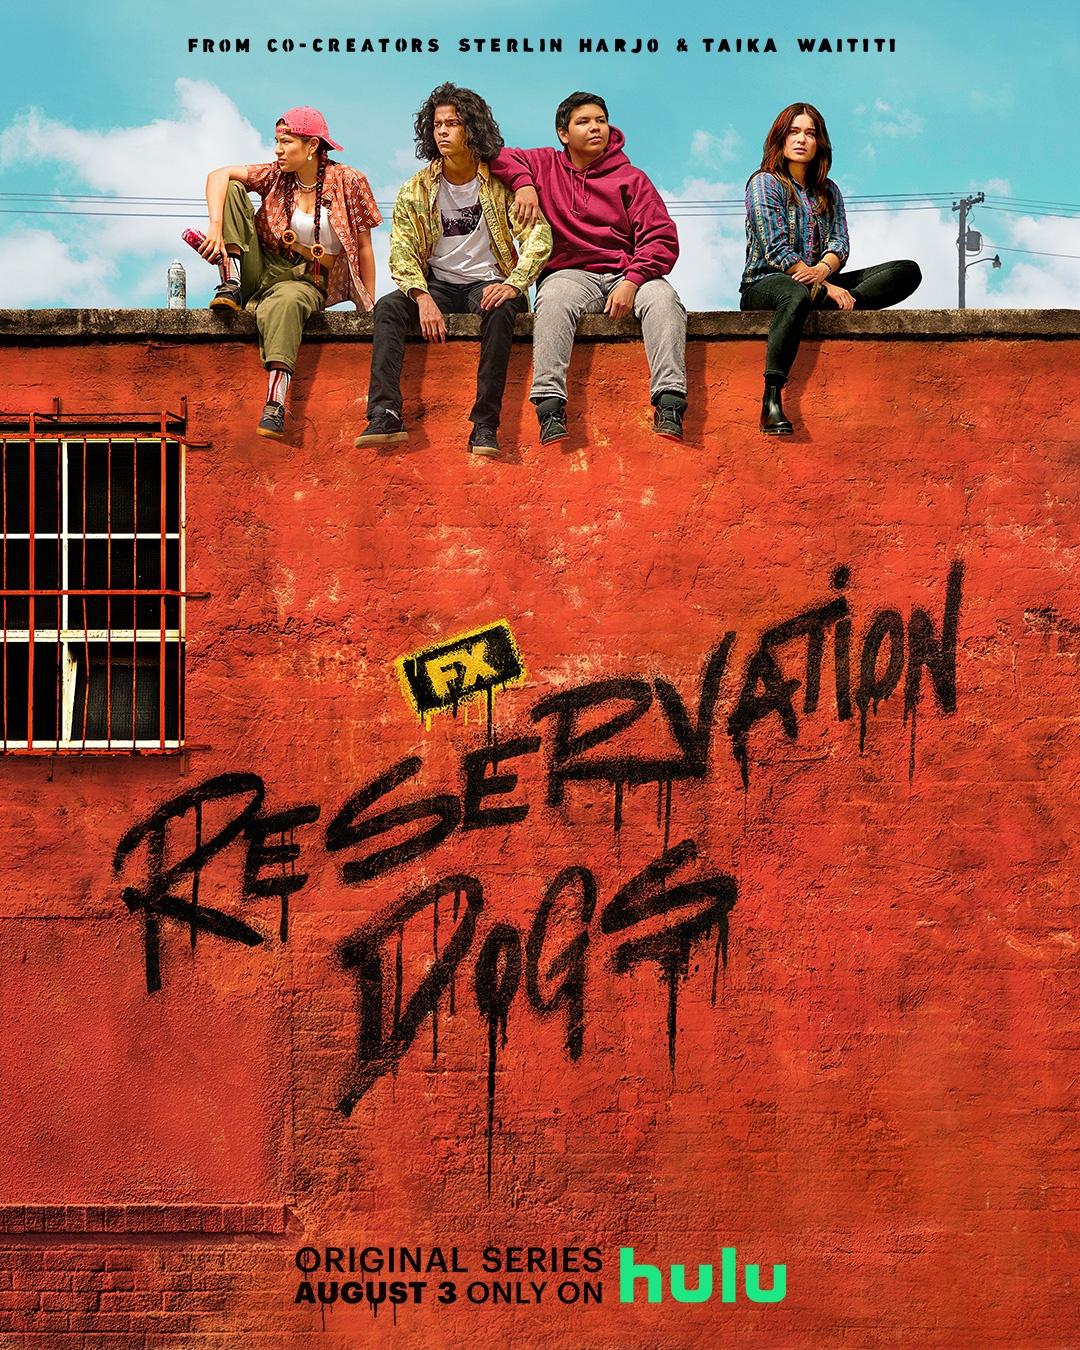 Постер фильма Псы резервации | Reservation Dogs